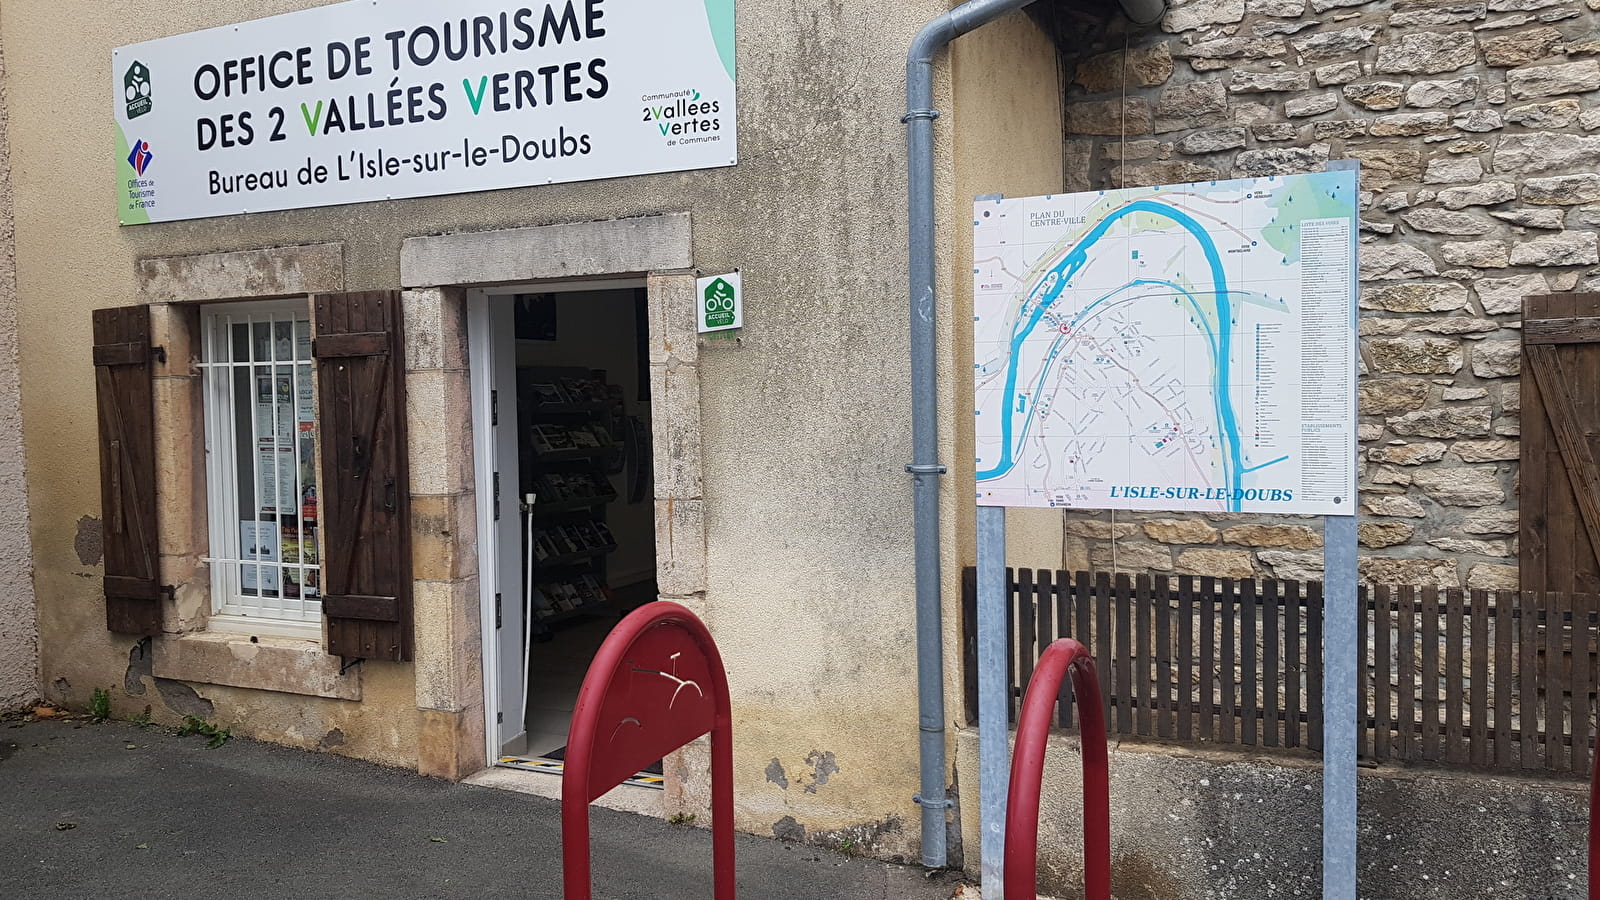 Office de Tourisme des 2 Vallées Vertes - Bureau de L'Isle-sur-le-Doubs